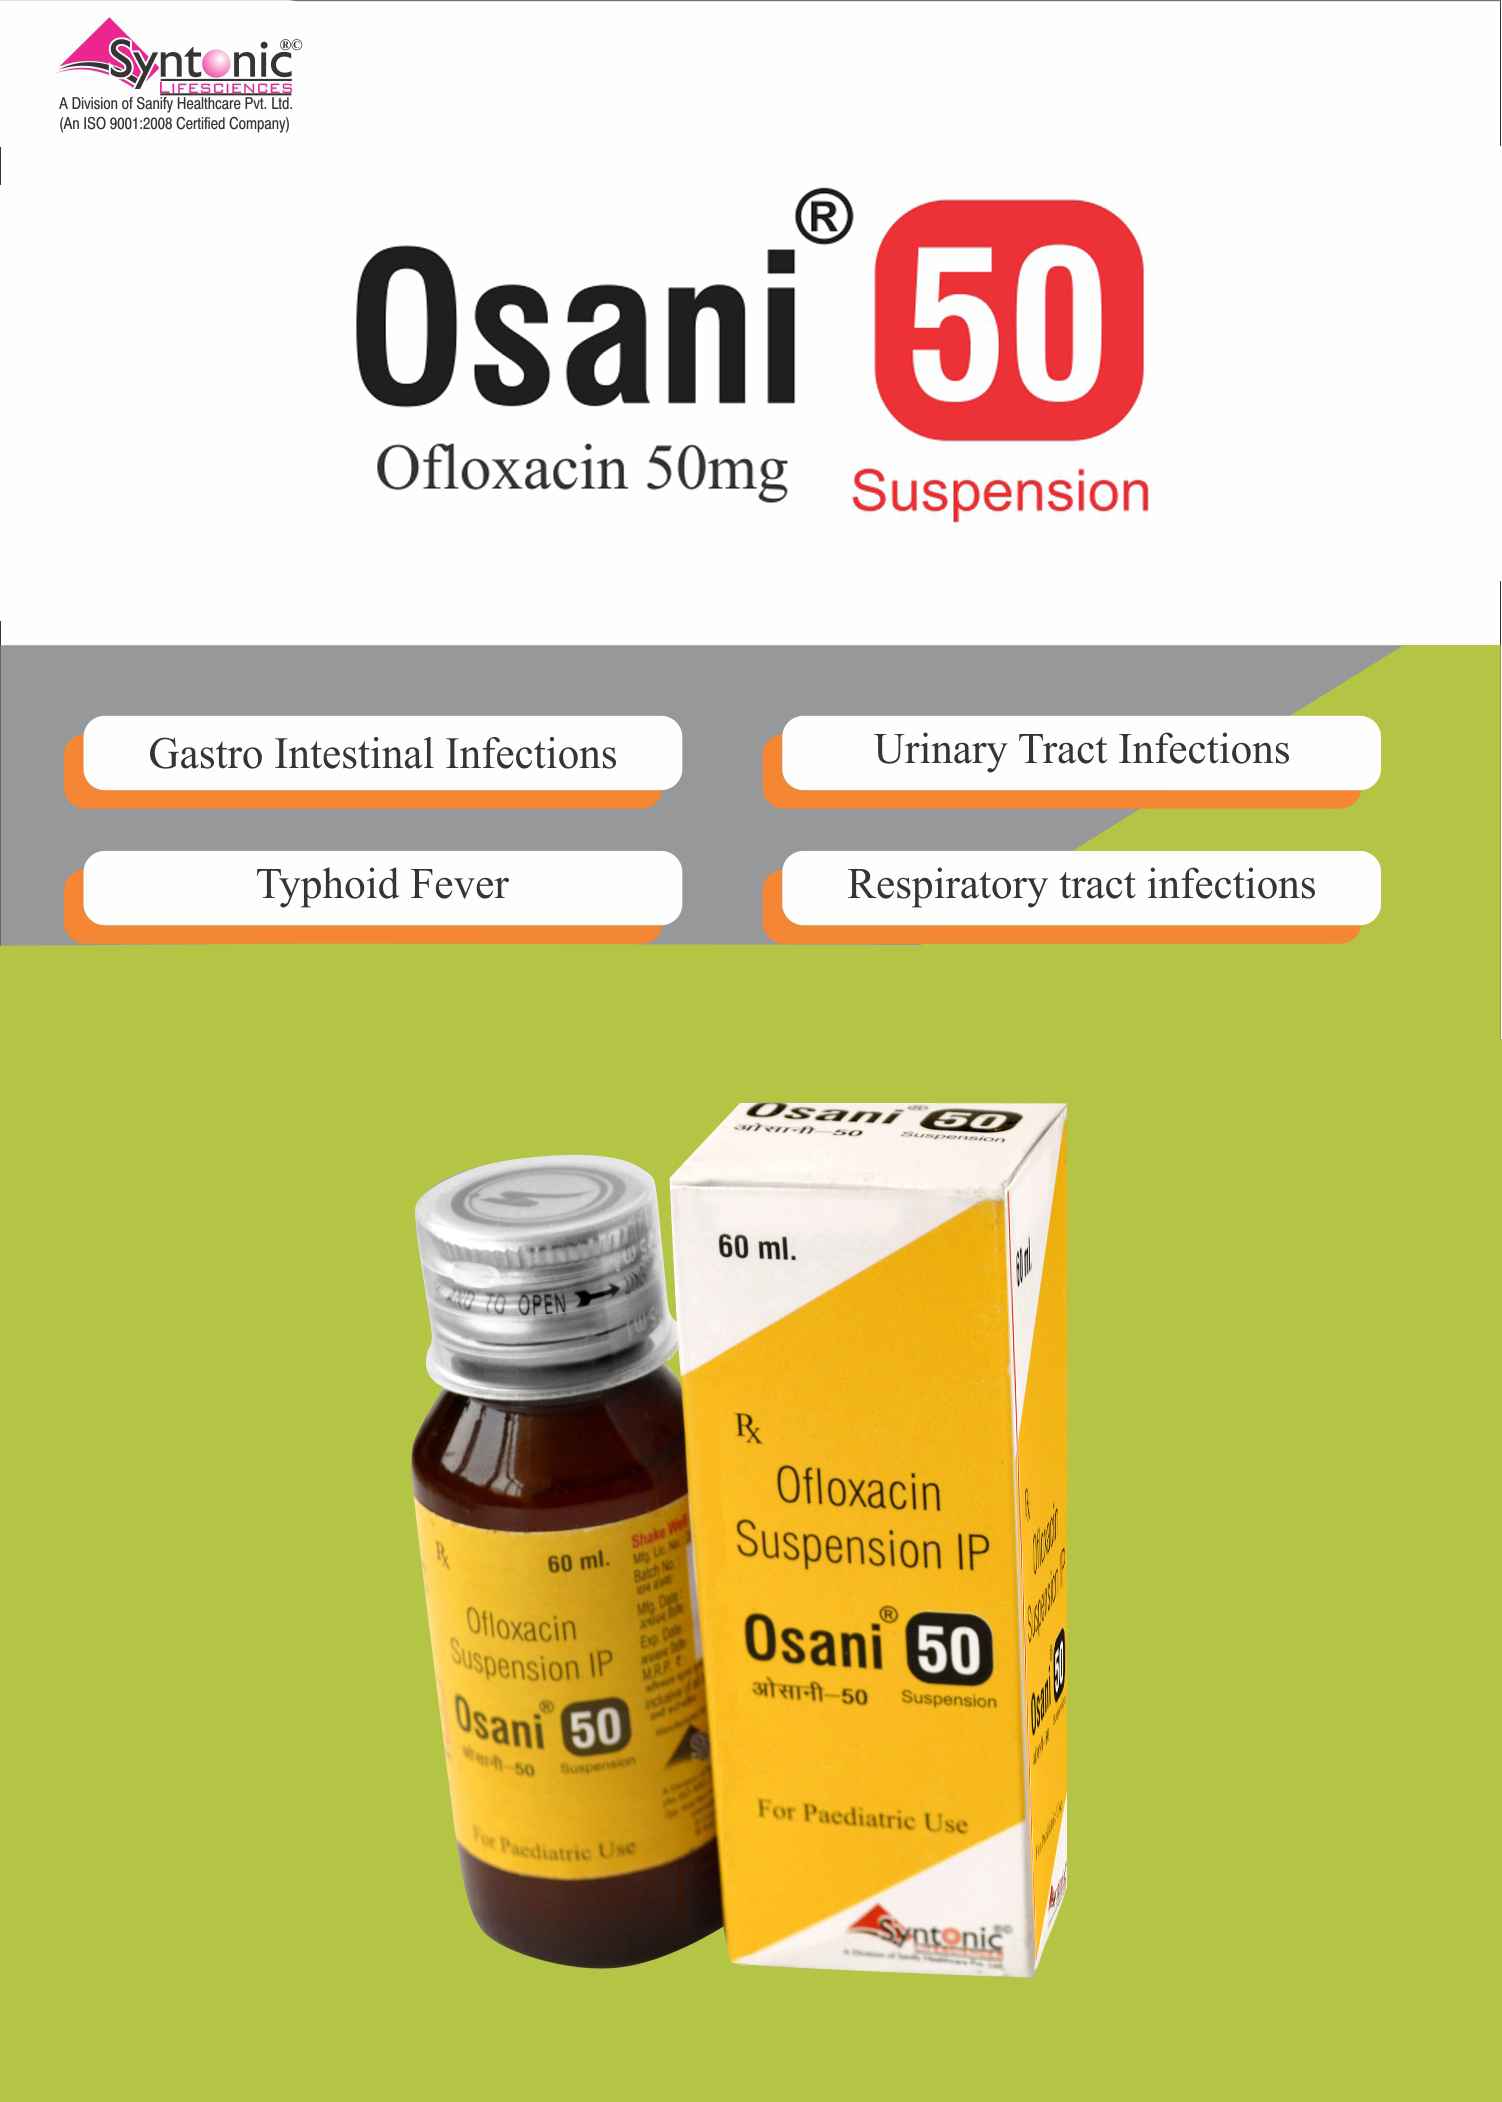 Ofloxacin 50mg